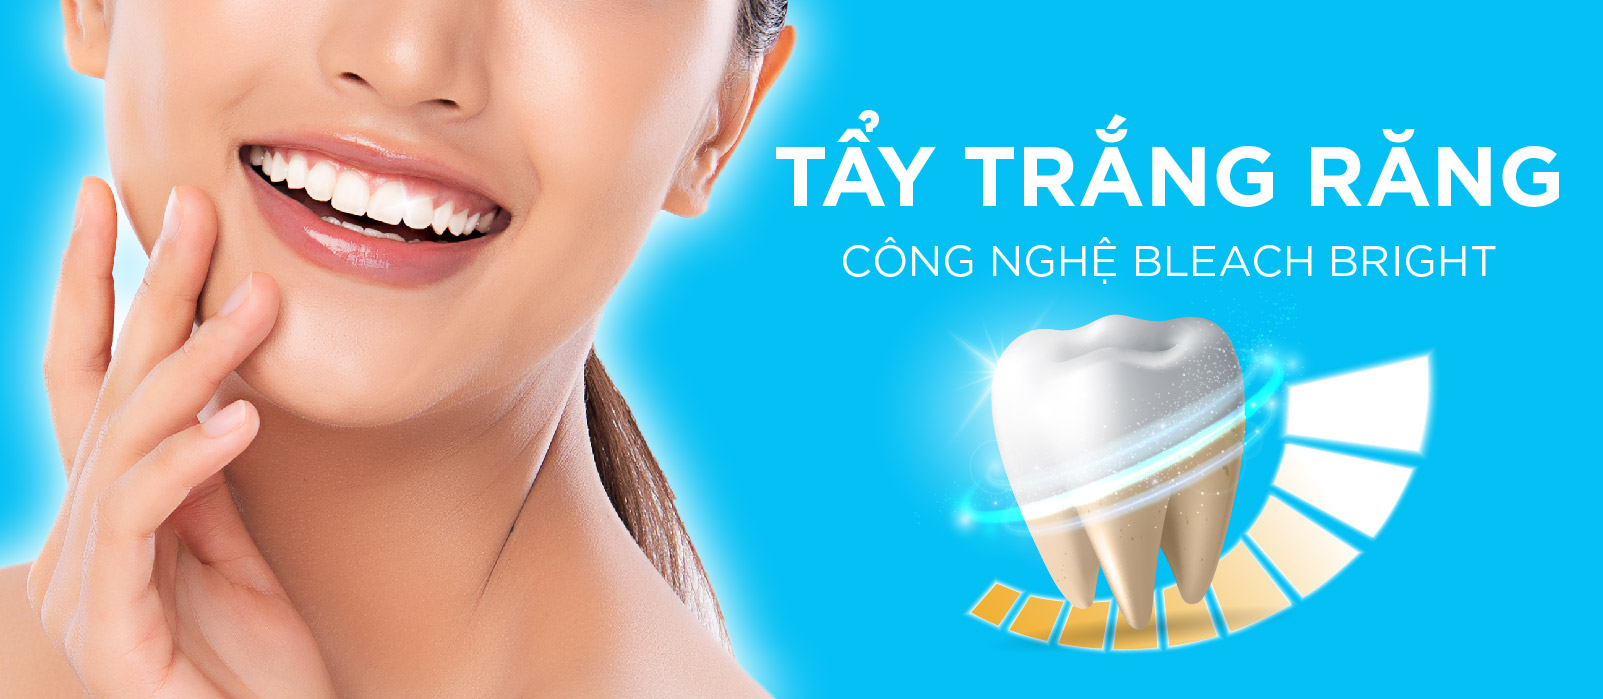 [Top Banner Mobile] Địa chỉ cung cấp dịch vụ tẩy răng trắng giá rẻ TPHCM